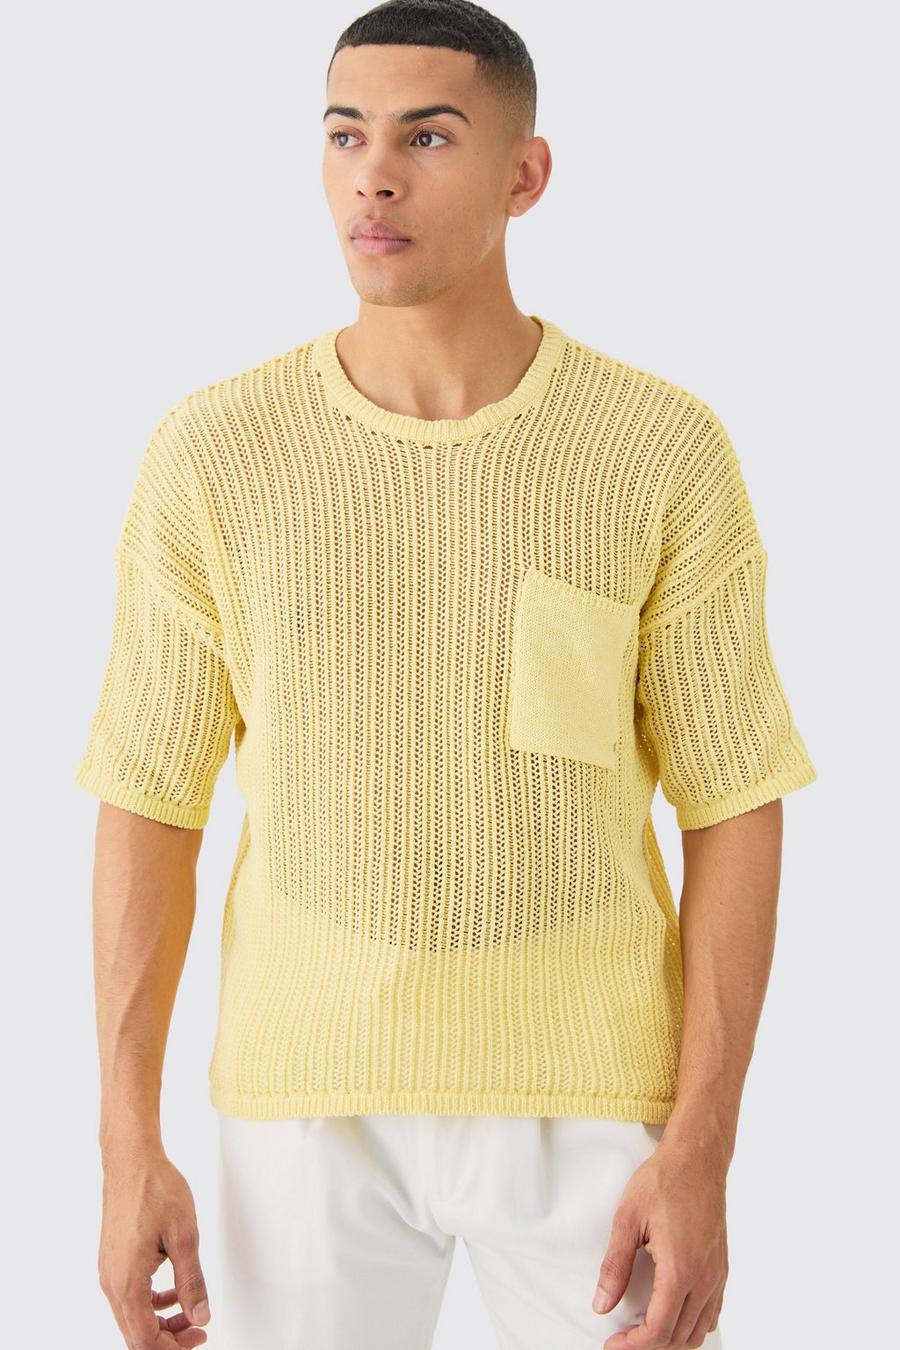 Camiseta oversize amarilla de punto calado con bolsillo, Yellow